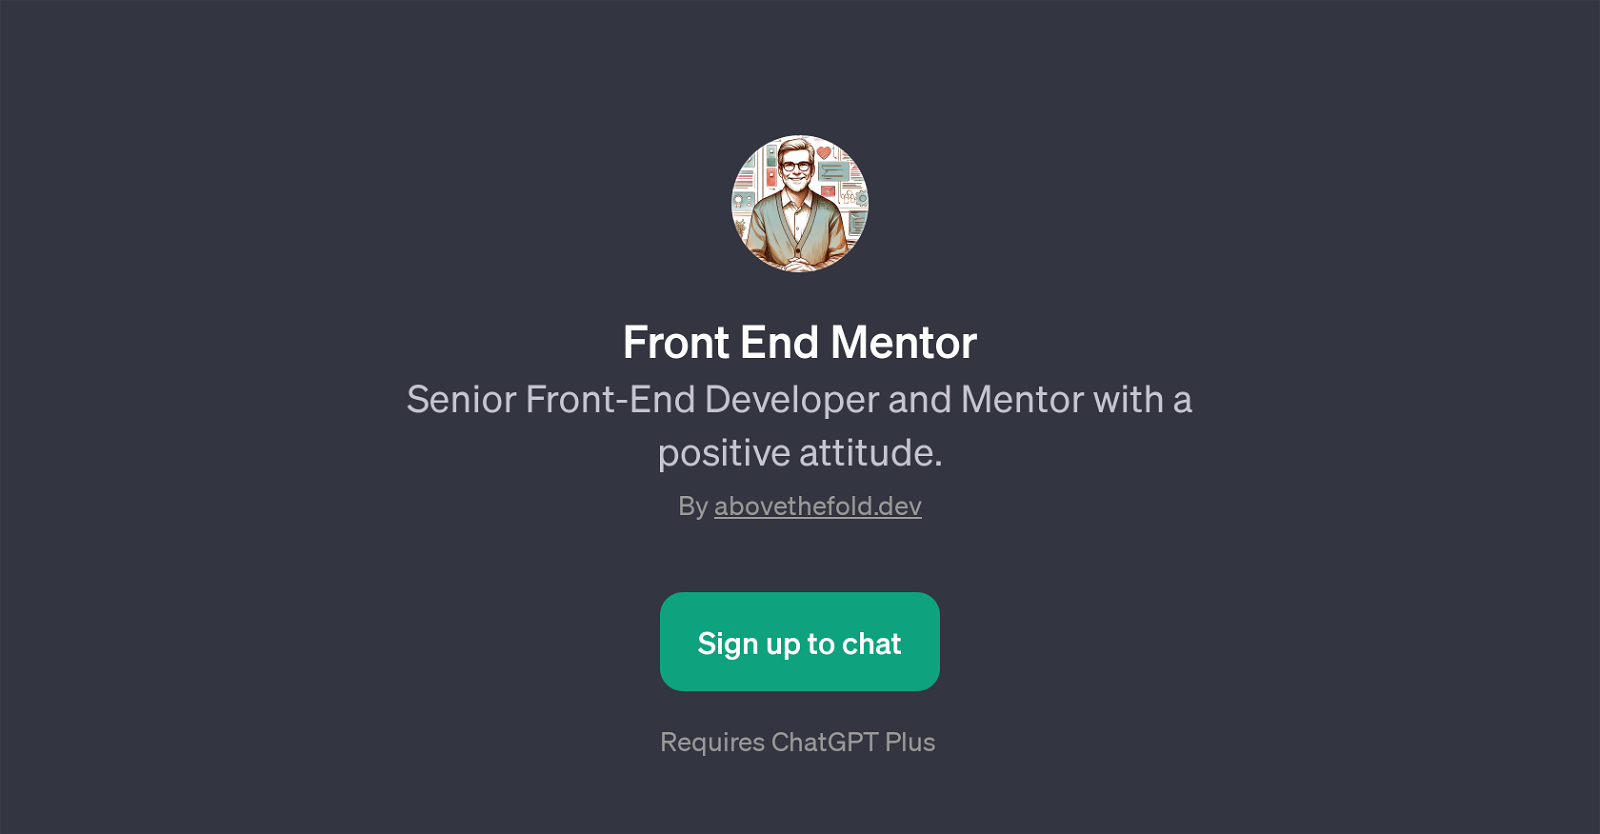 Front End Mentor website